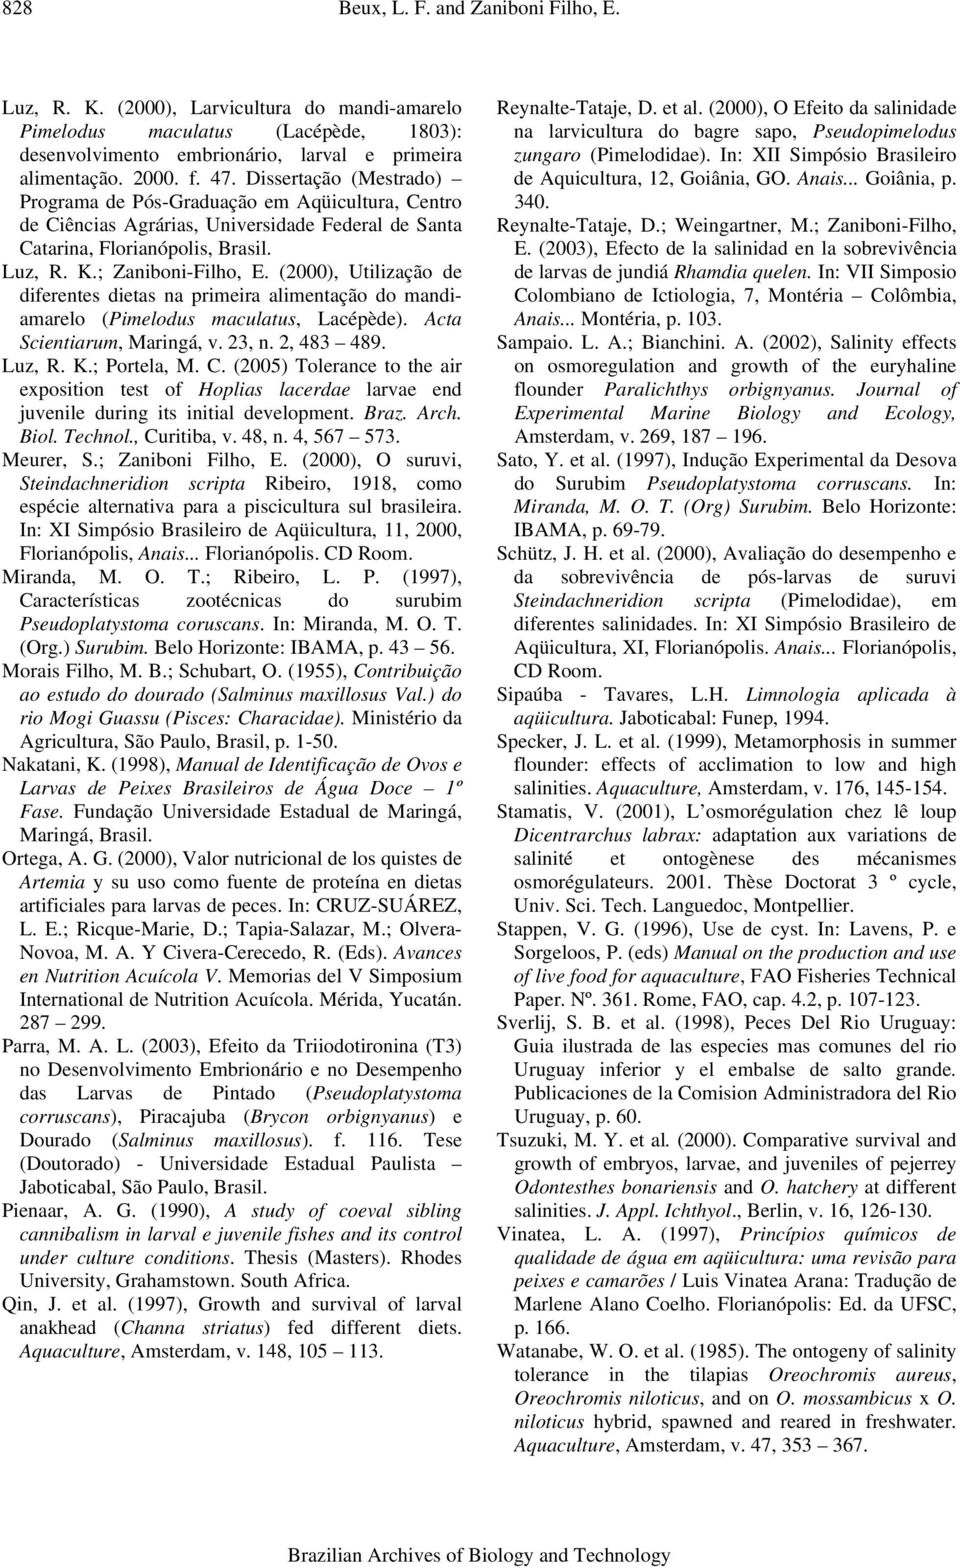 (2000), Utilização de diferentes dietas na primeira alimentação do mandiamarelo (Pimelodus maculatus, Lacépède). Acta Scientiarum, Maringá, v. 23, n. 2, 483 489. Luz, R. K.; Portela, M. C.